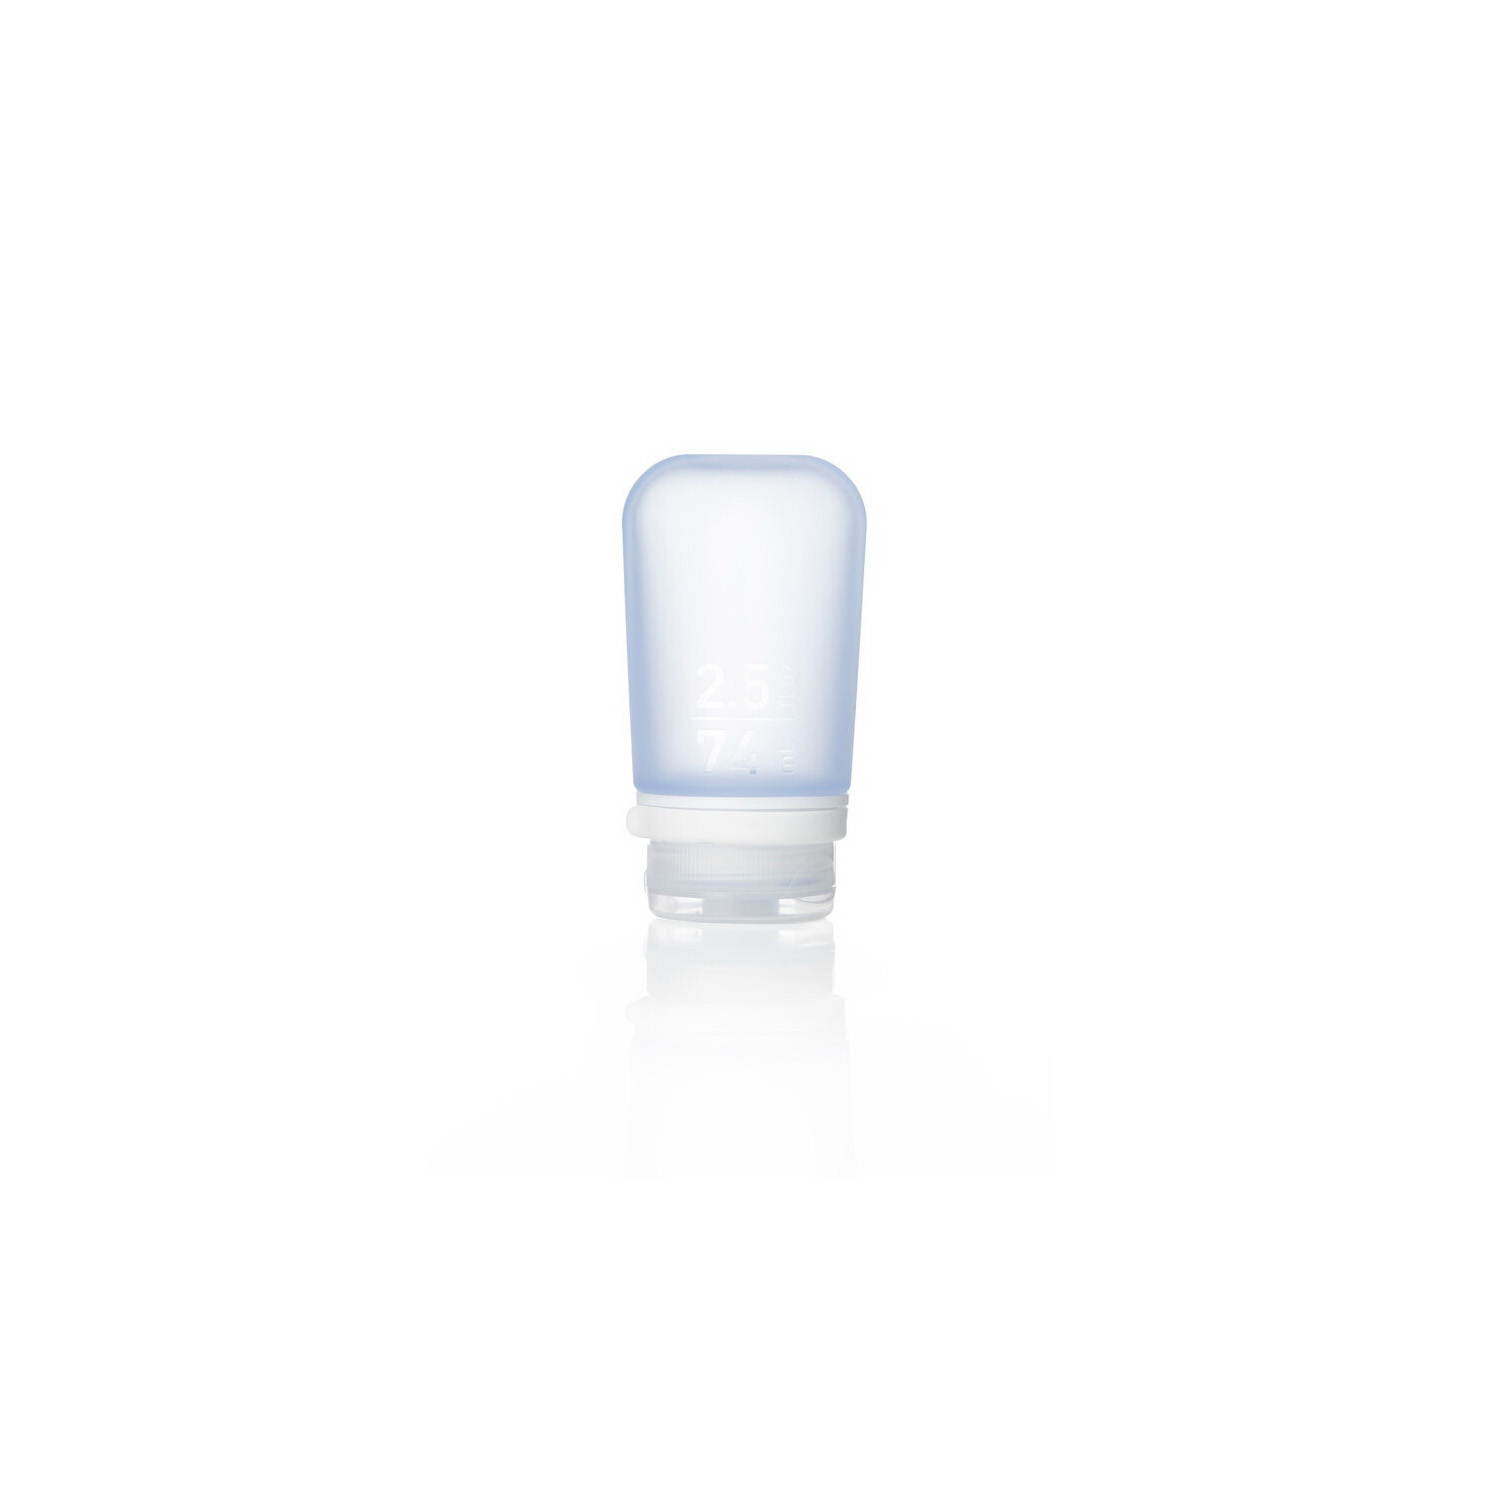 Humangear HG3124 Travel Bottle, Medium, 2.5 fl-oz Capacity, Polypropylene/Silicone, Blue - 1